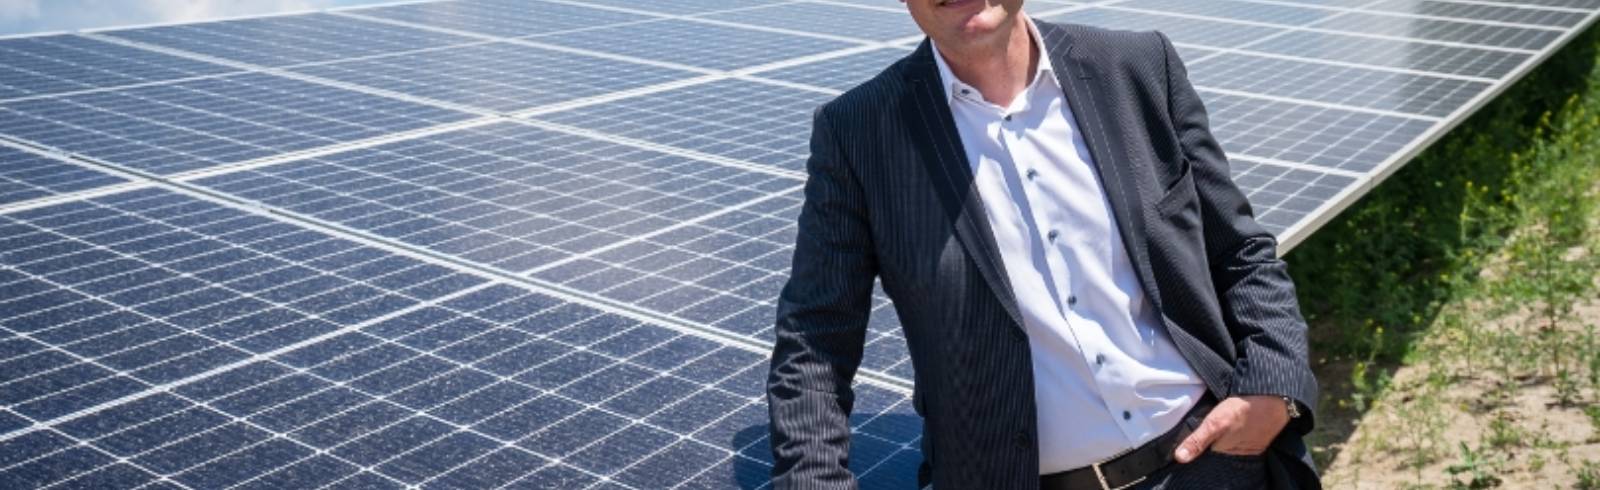 Wien startet neue Photovoltaik-Förderung